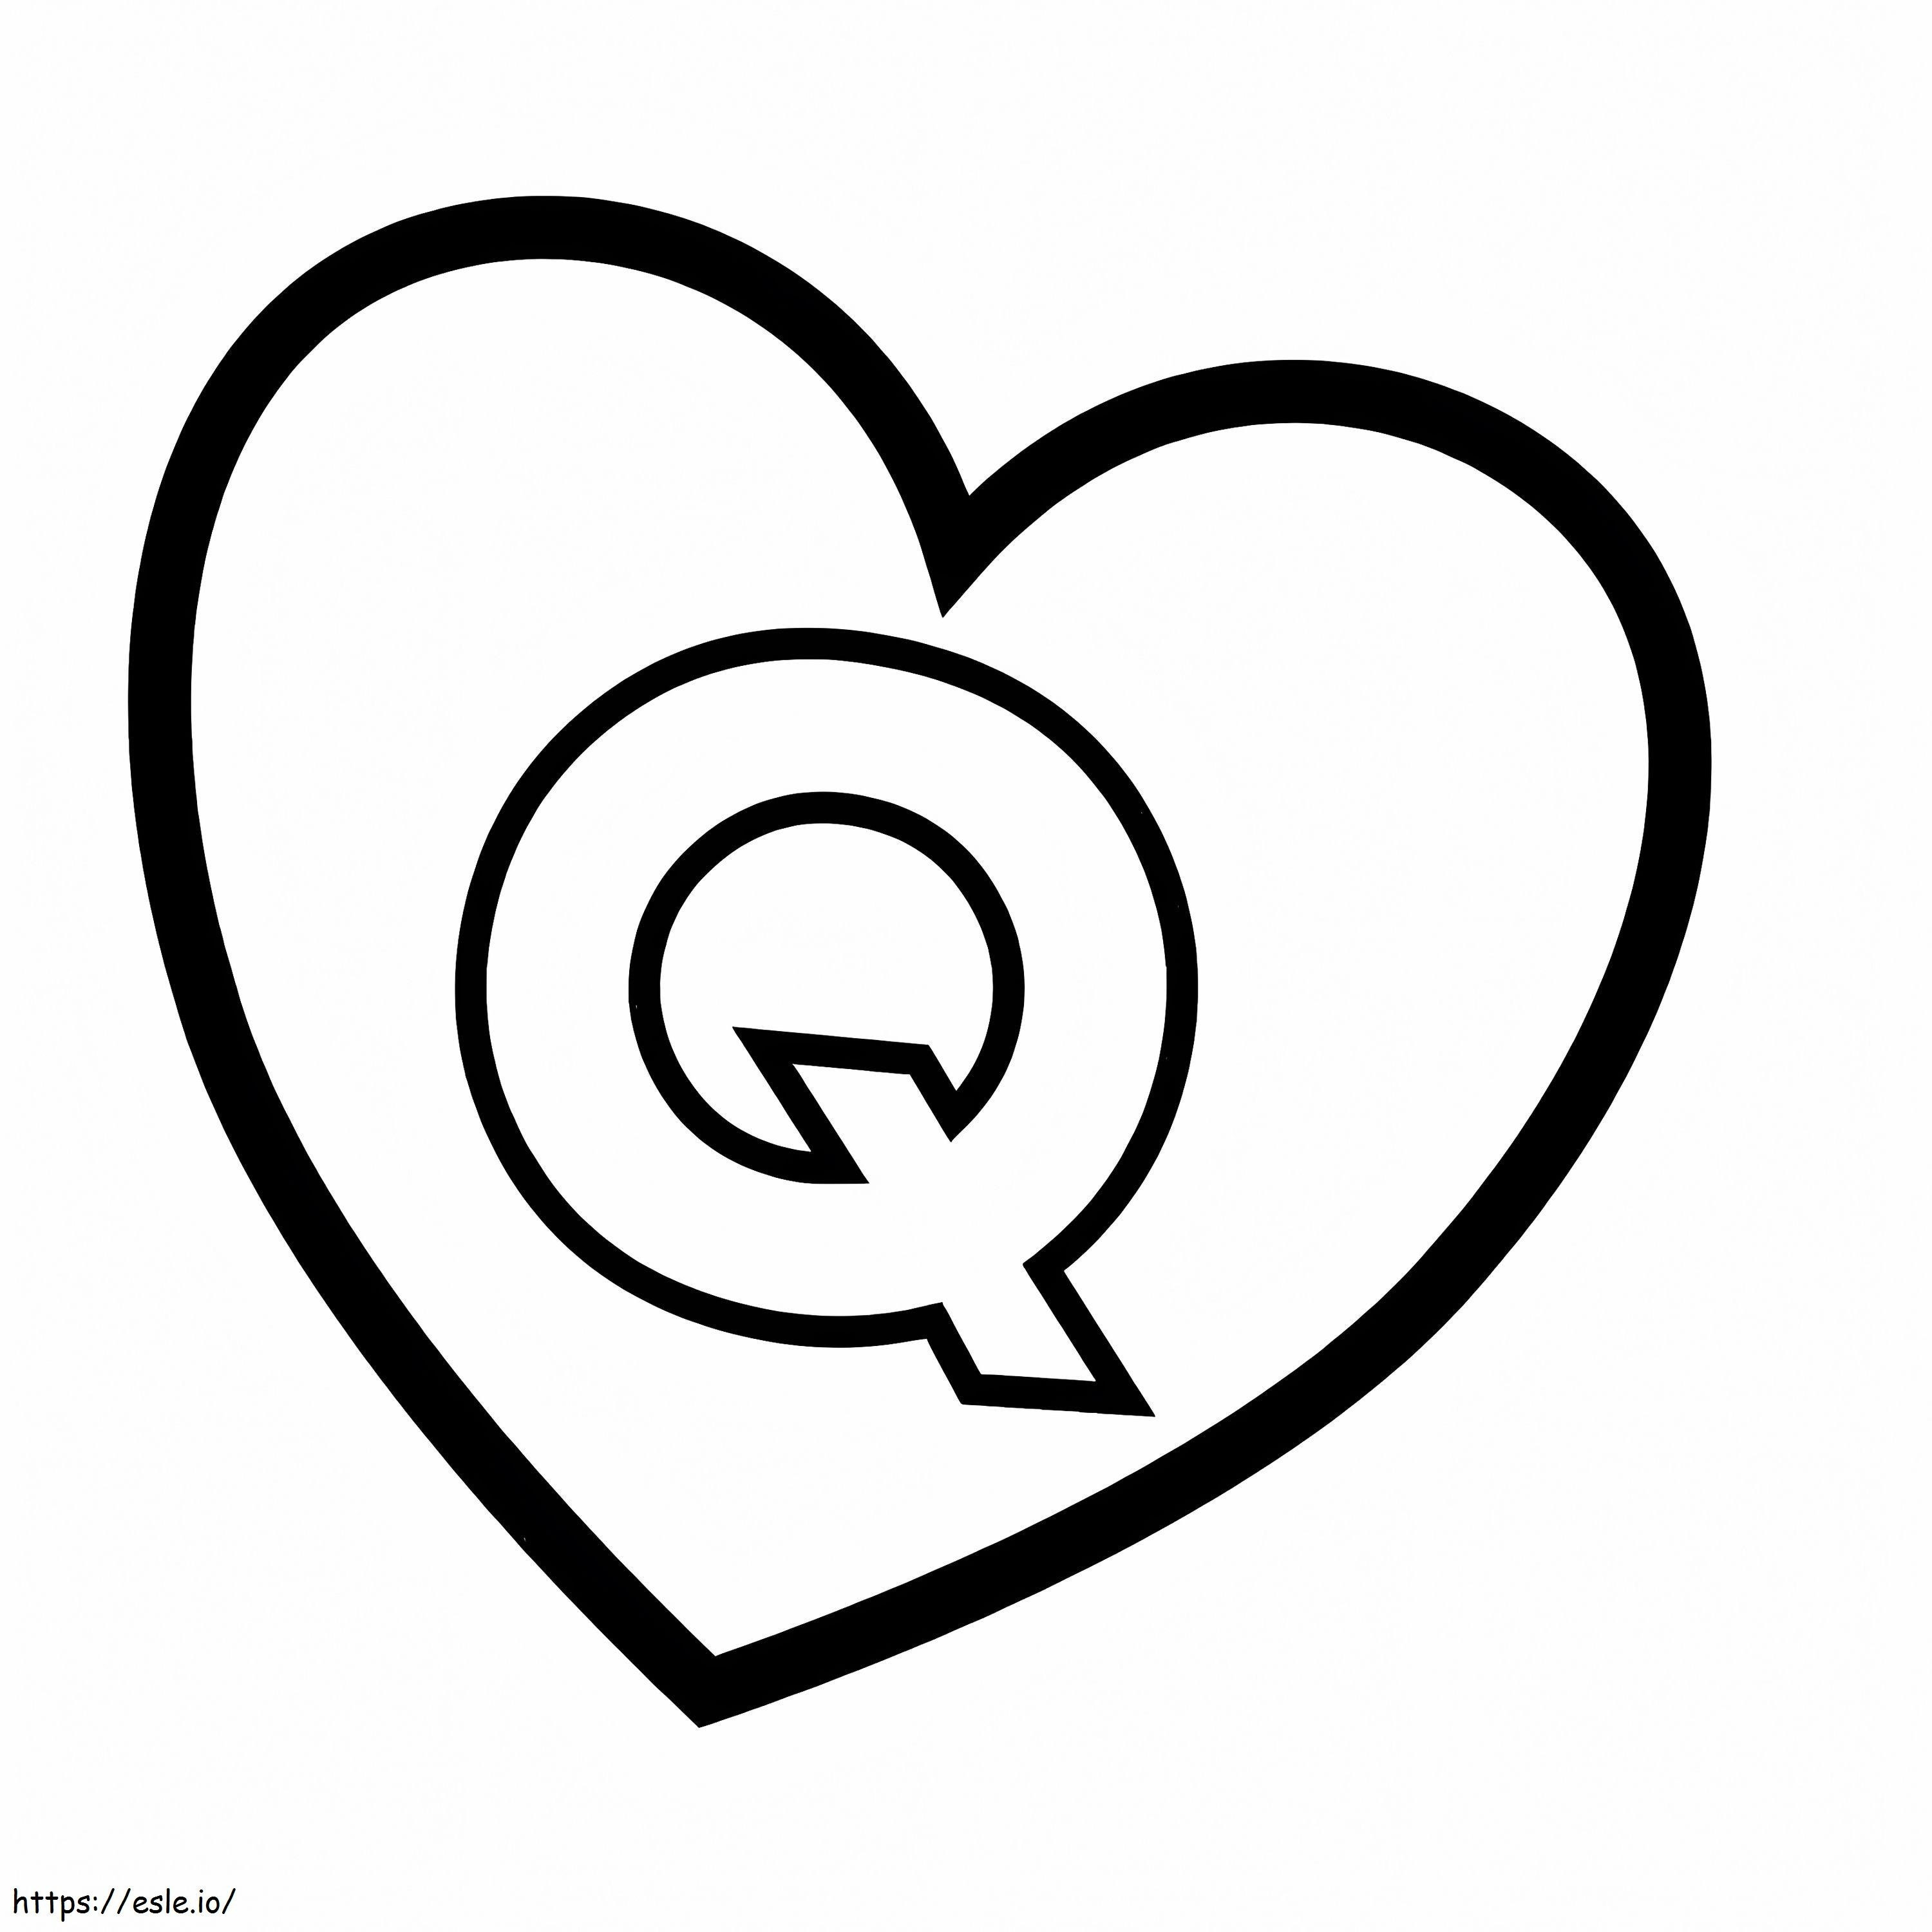 Litera Q în inimă de colorat